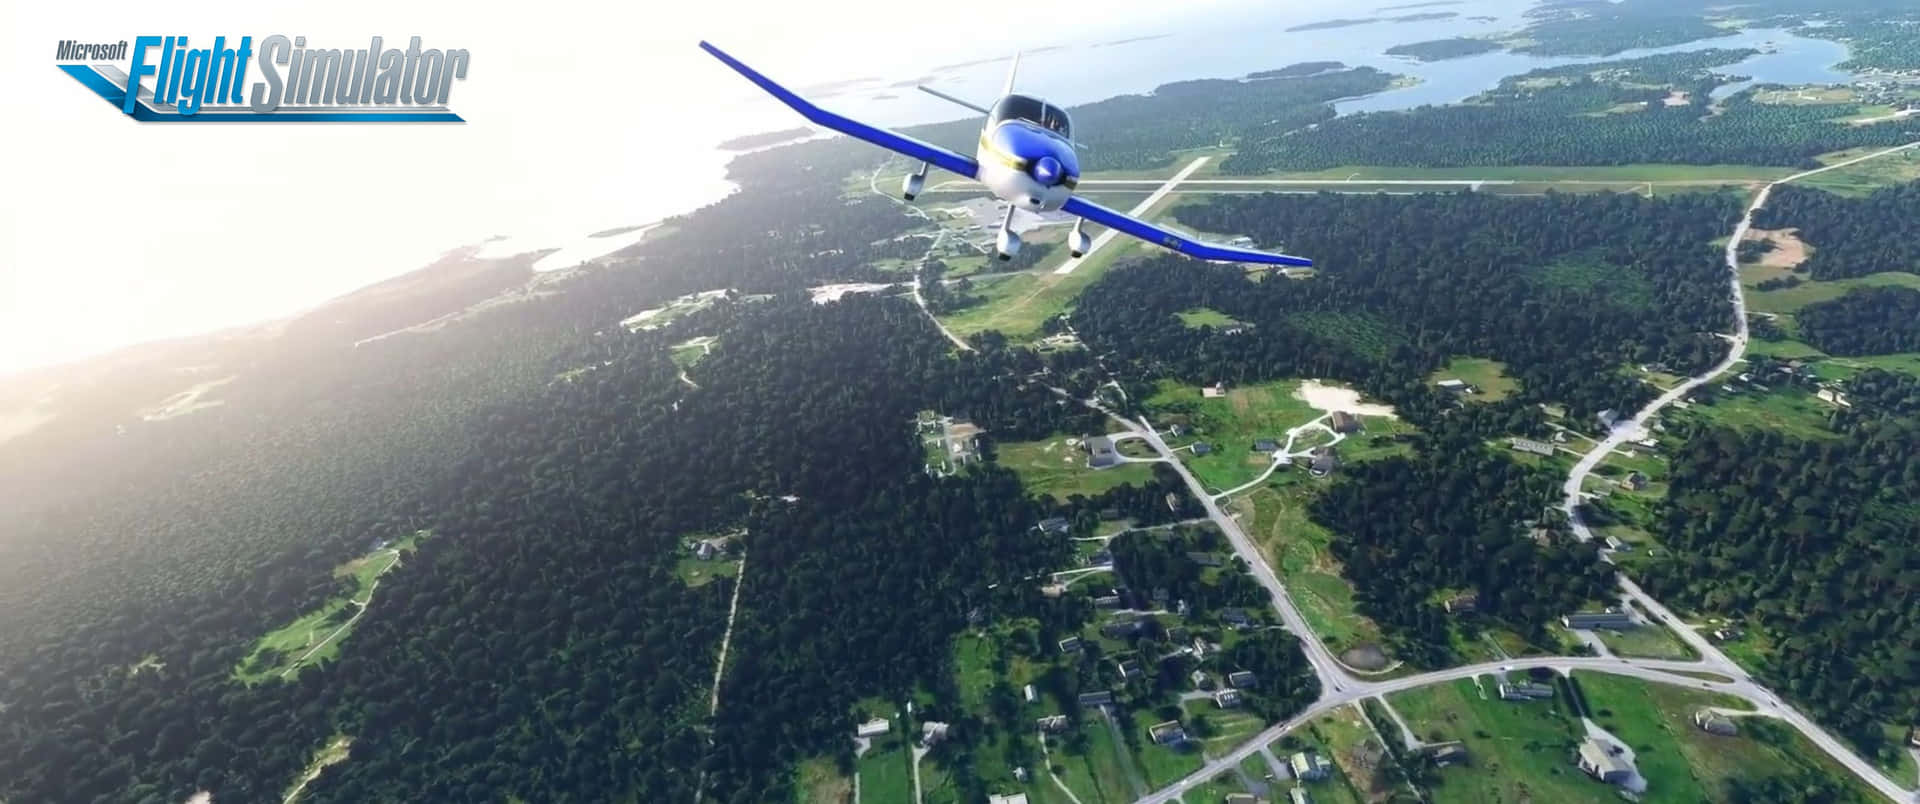 Explore the world in Microsoft Flight Simulator